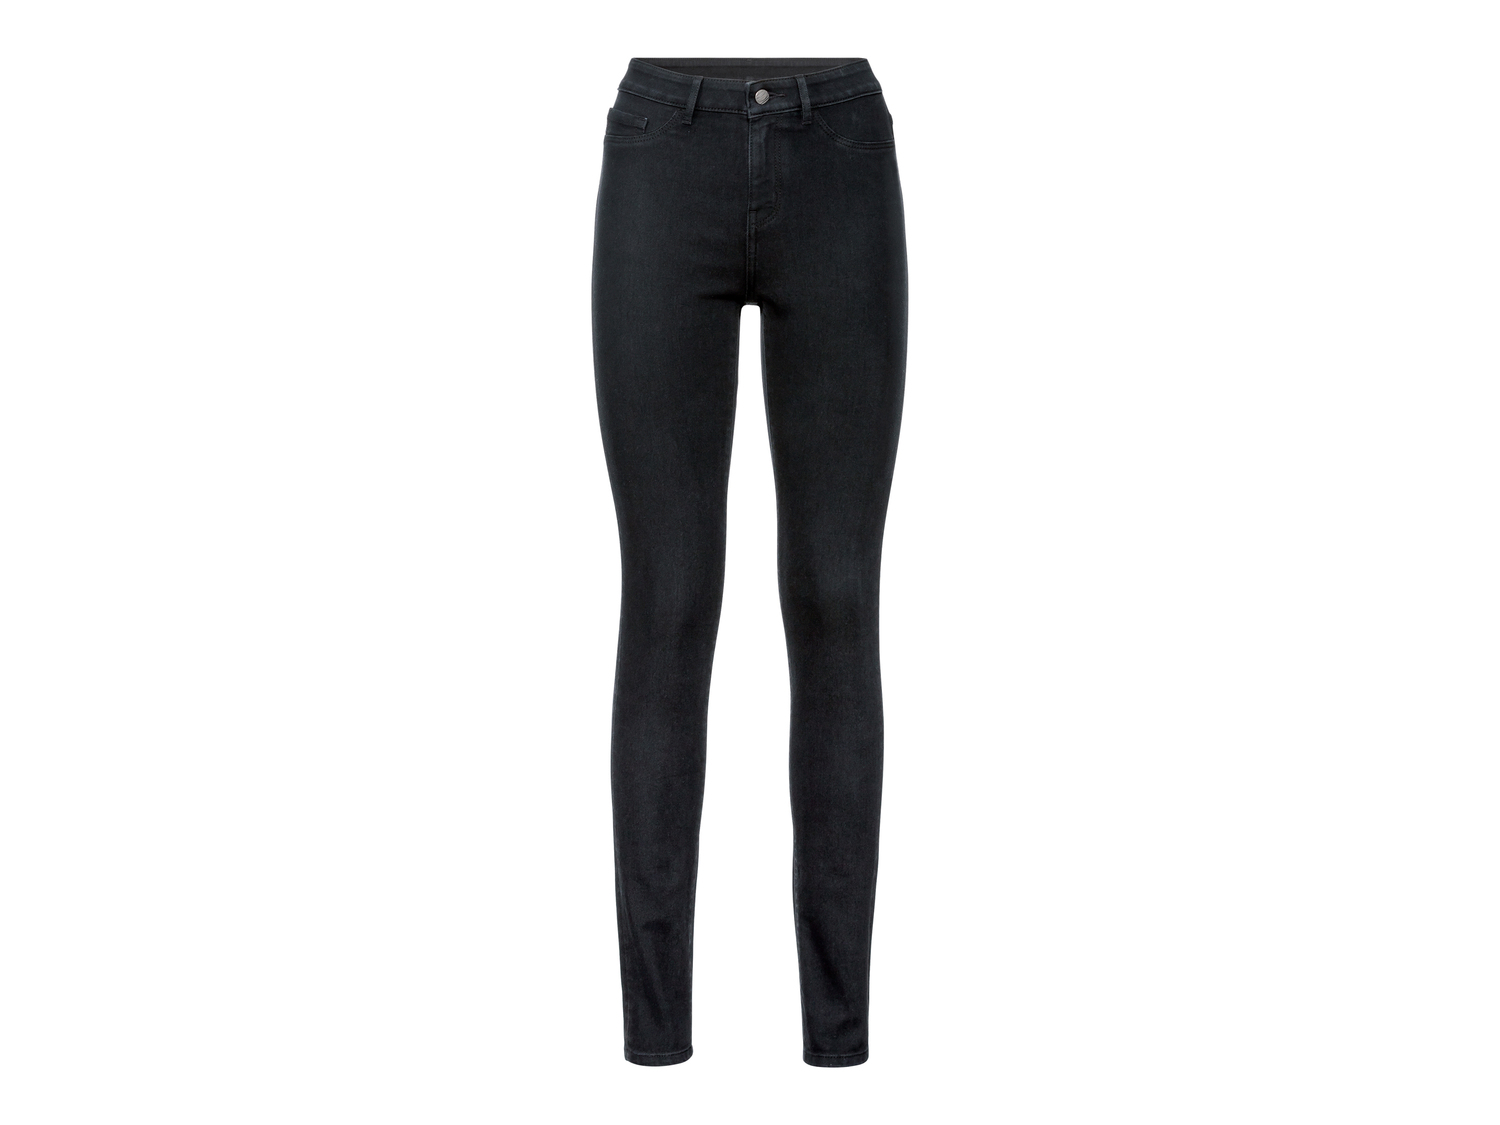 Jeans slim fit da donna Esmara, prezzo 8.99 &#8364; 
Misure: 38-48
Taglie disponibili

Caratteristiche

- ...